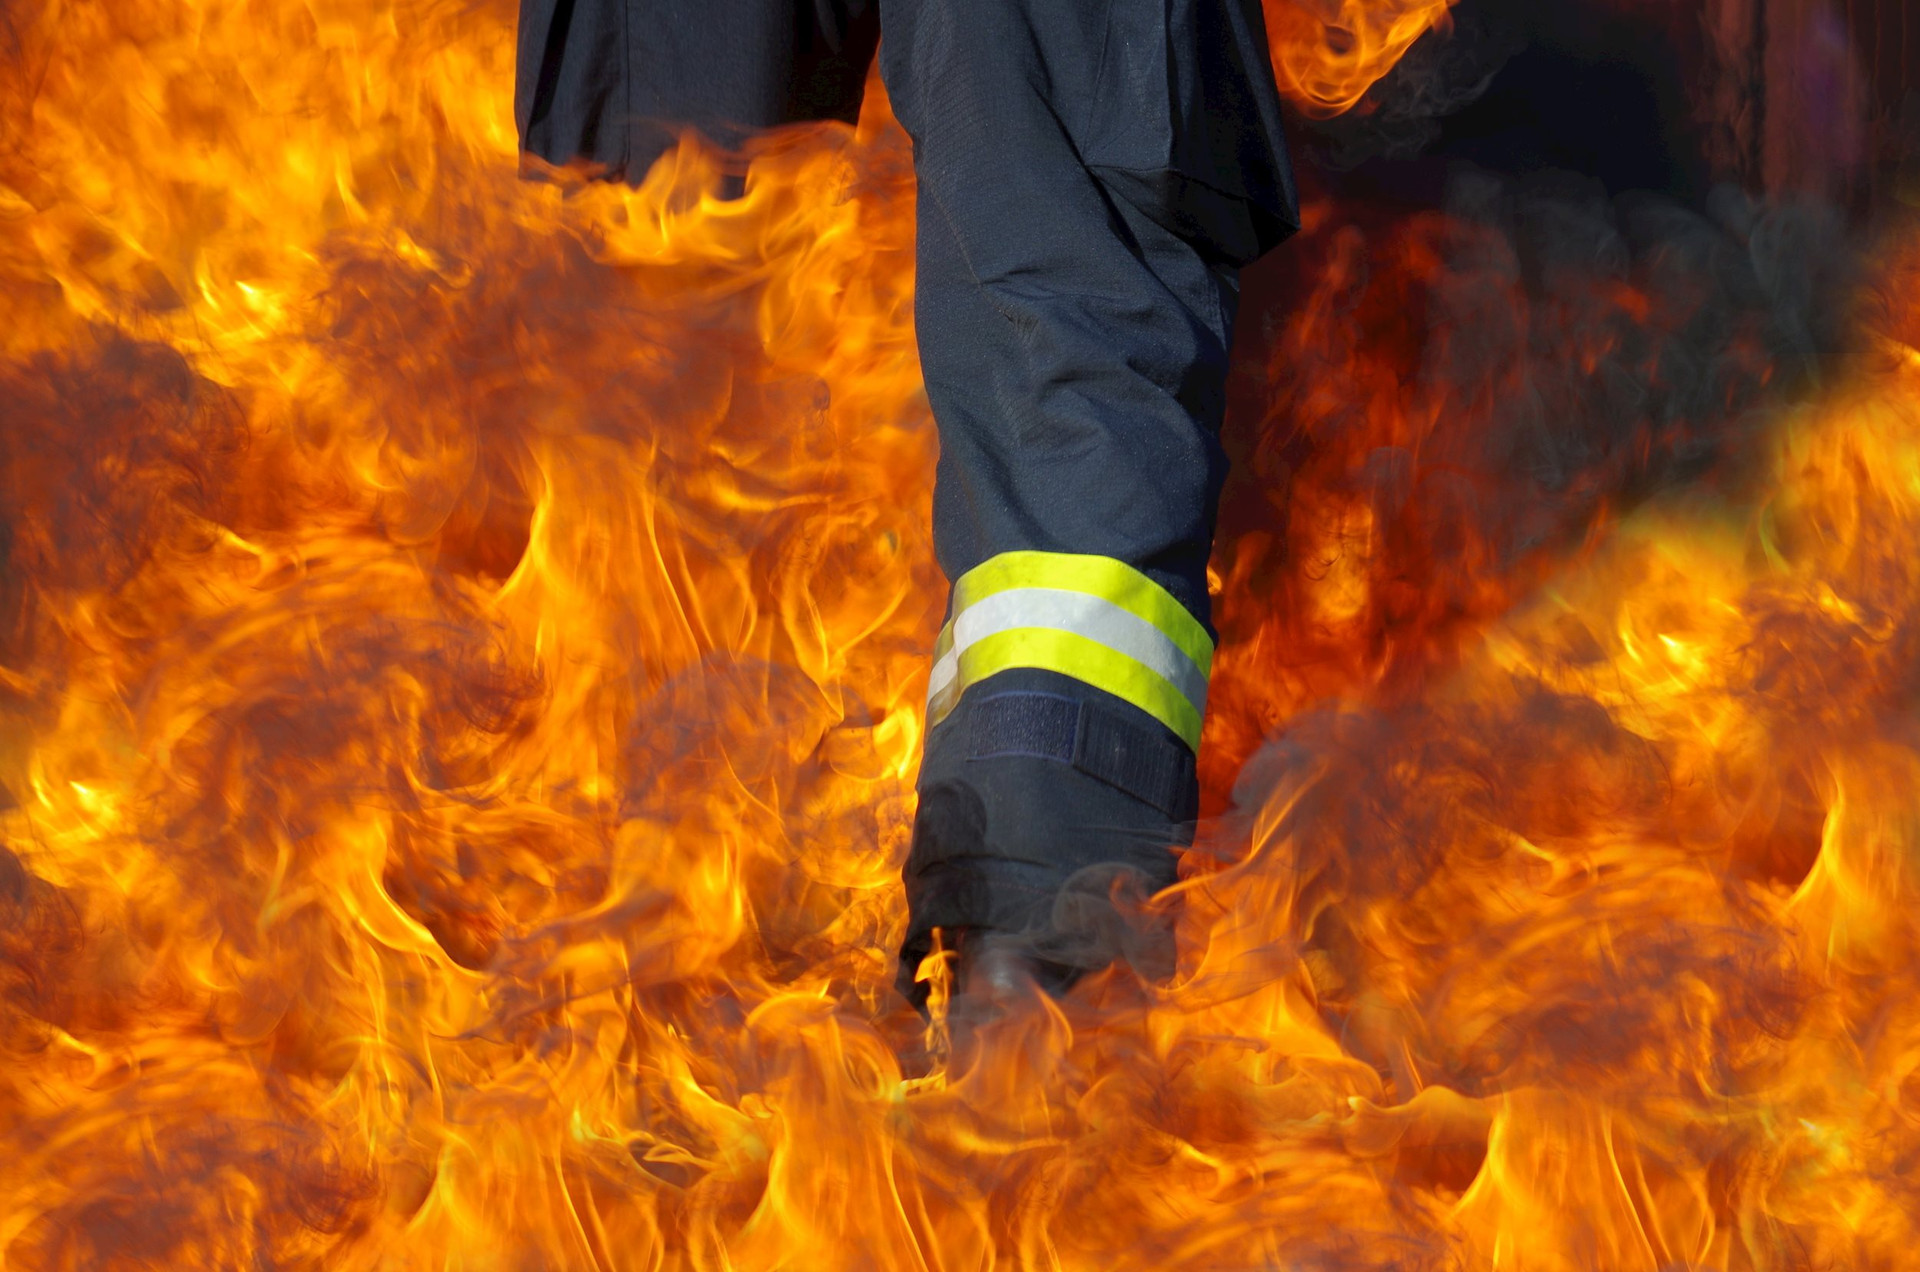 flame-fire-bonfire-hot-fireman-screenshot-1036682-pxhere.com.jpg